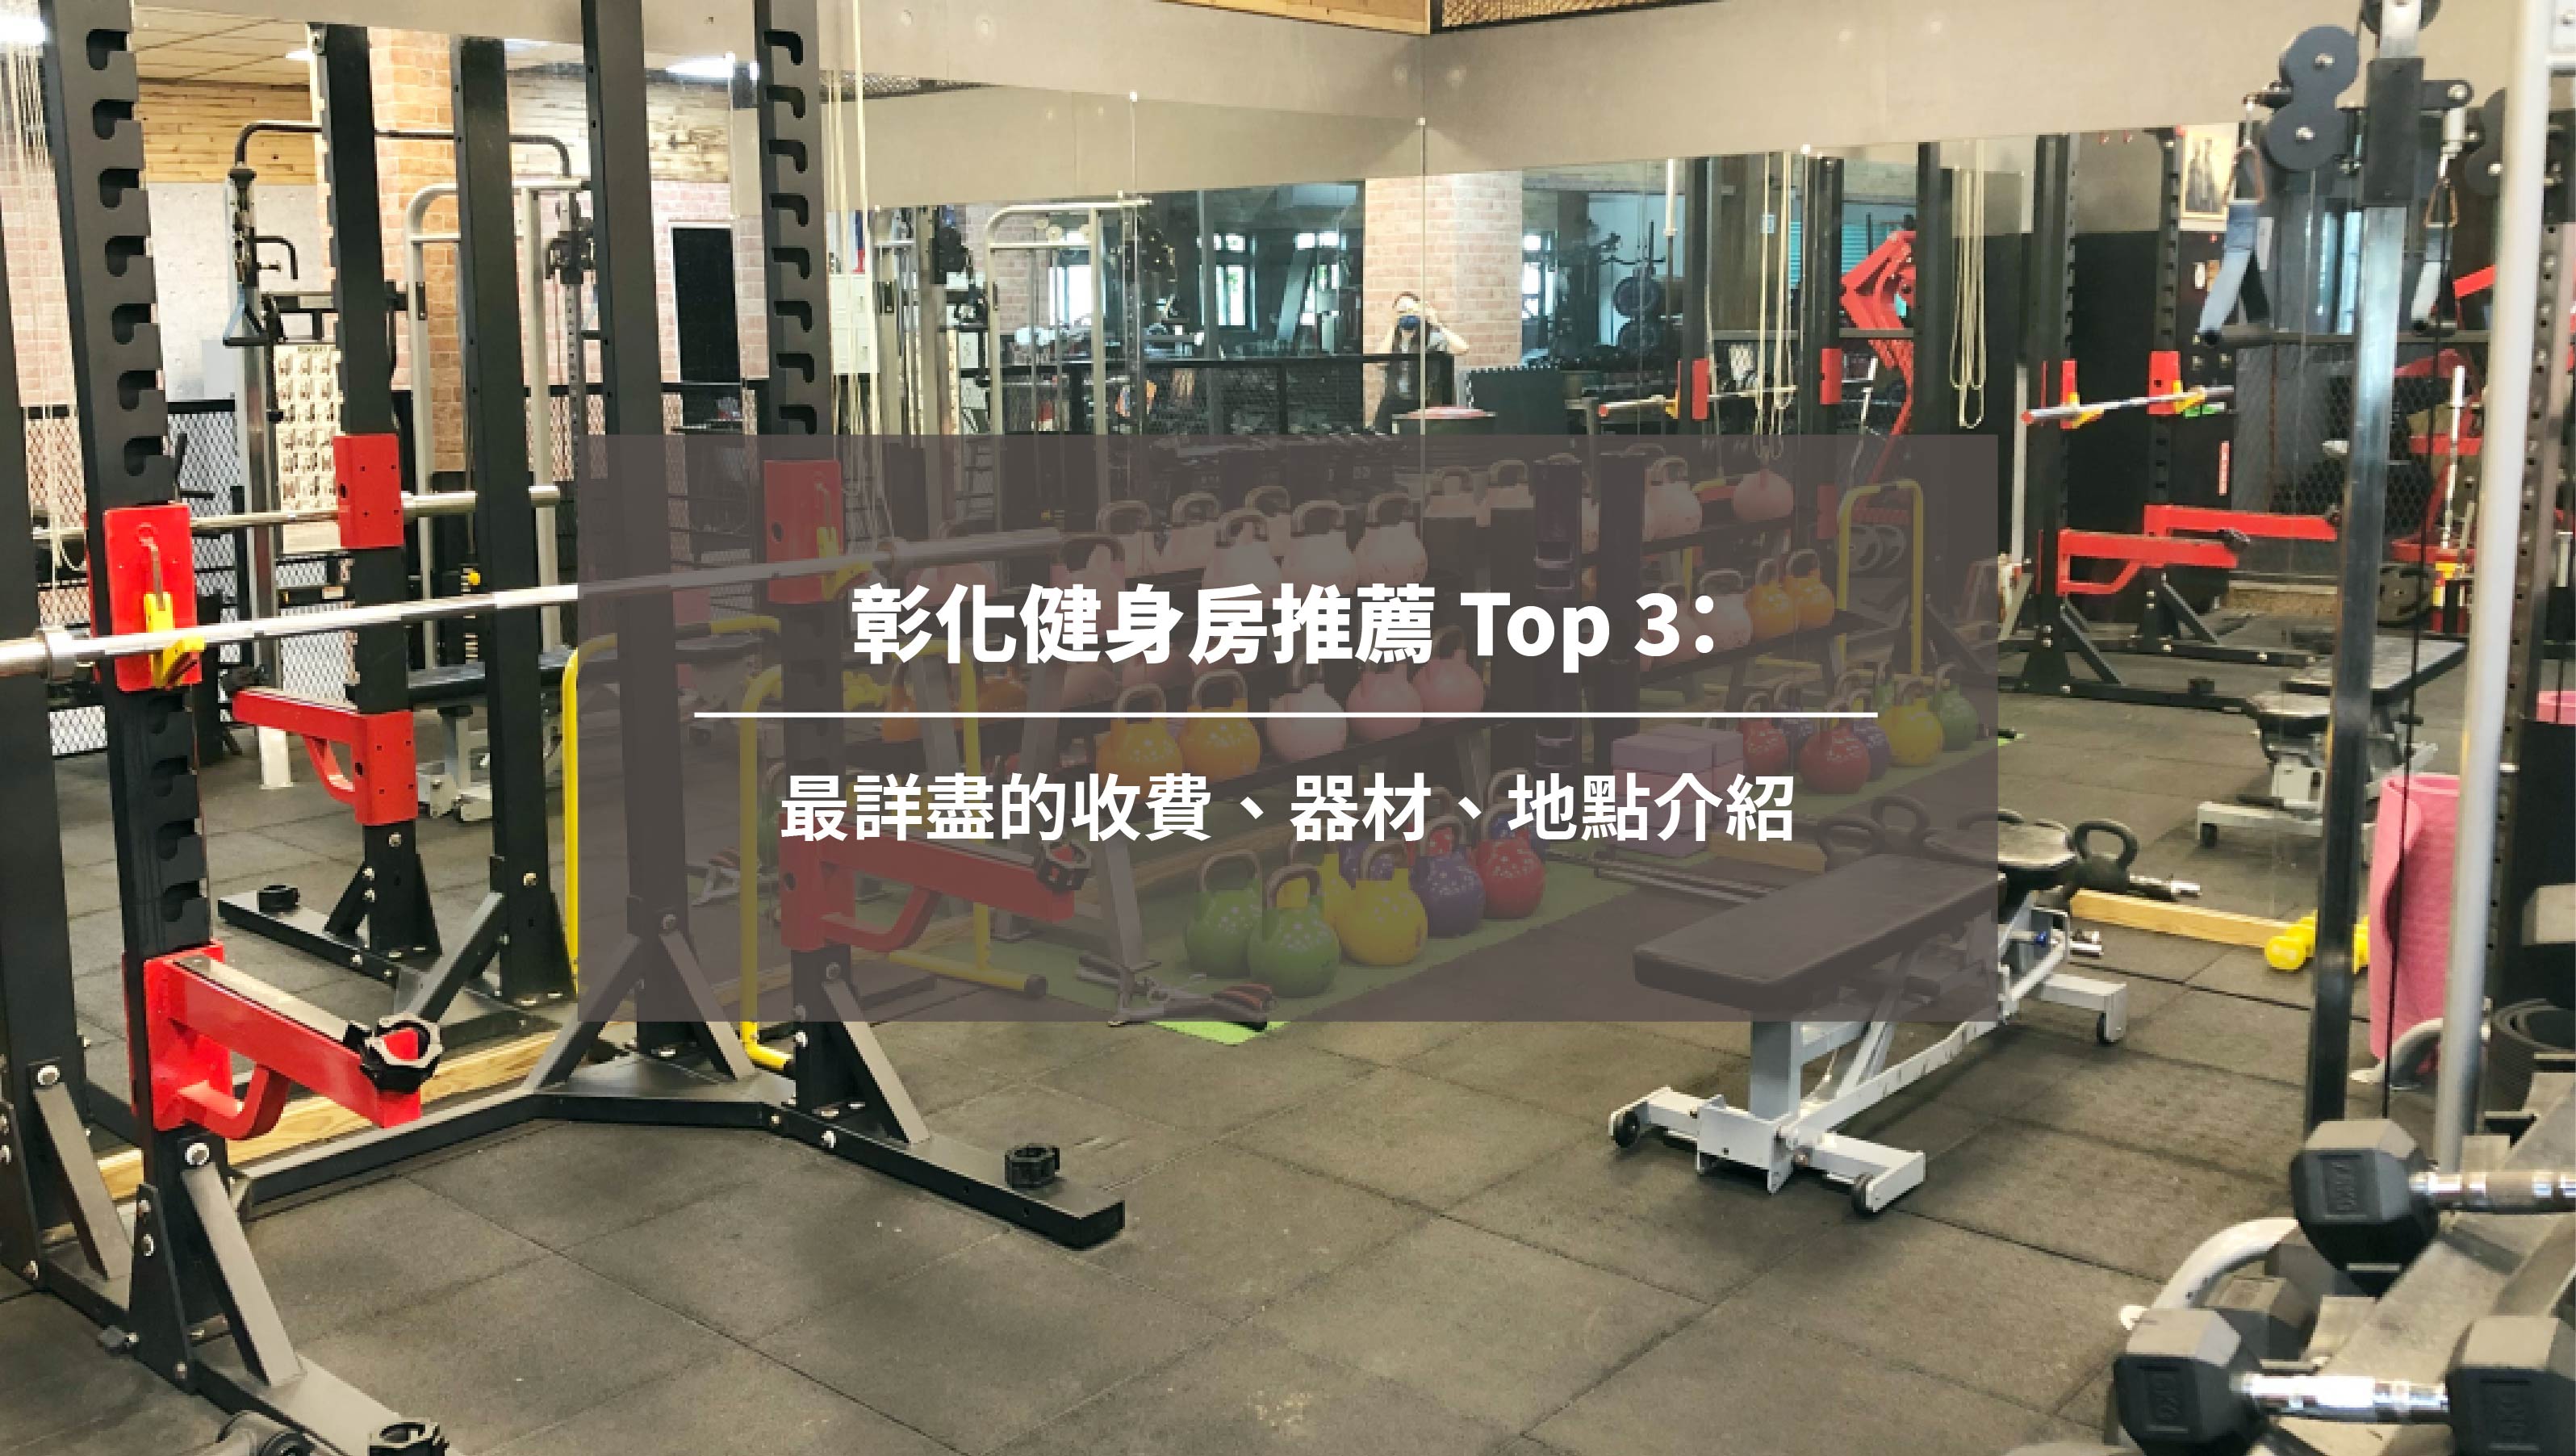 彰化健身房推薦 Top 3：最詳盡的收費、器材、地點介紹